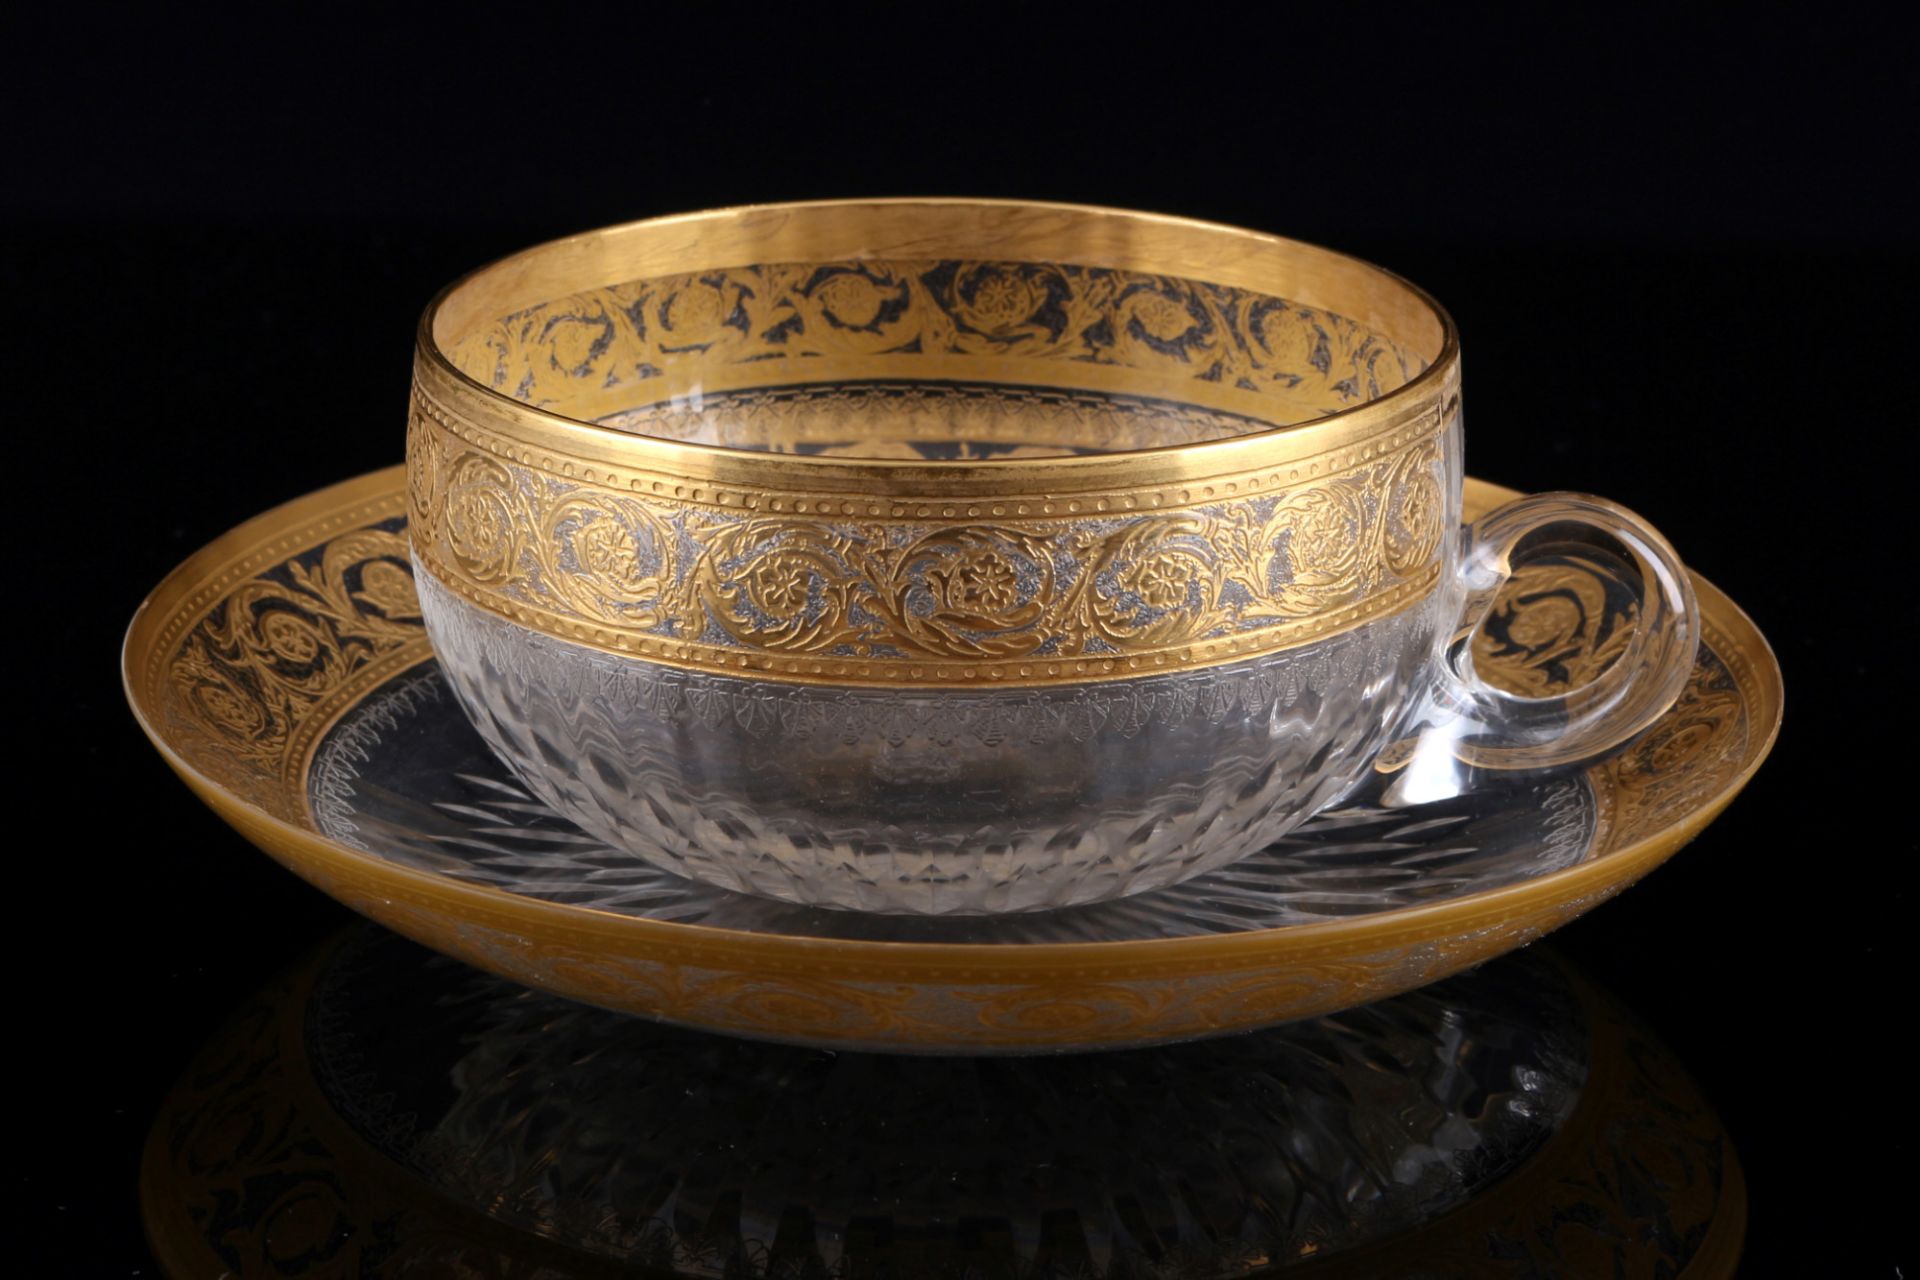 St. Louis Thistle Gold 6 cups with saucers, Tassen mit Untertassen, - Image 2 of 3